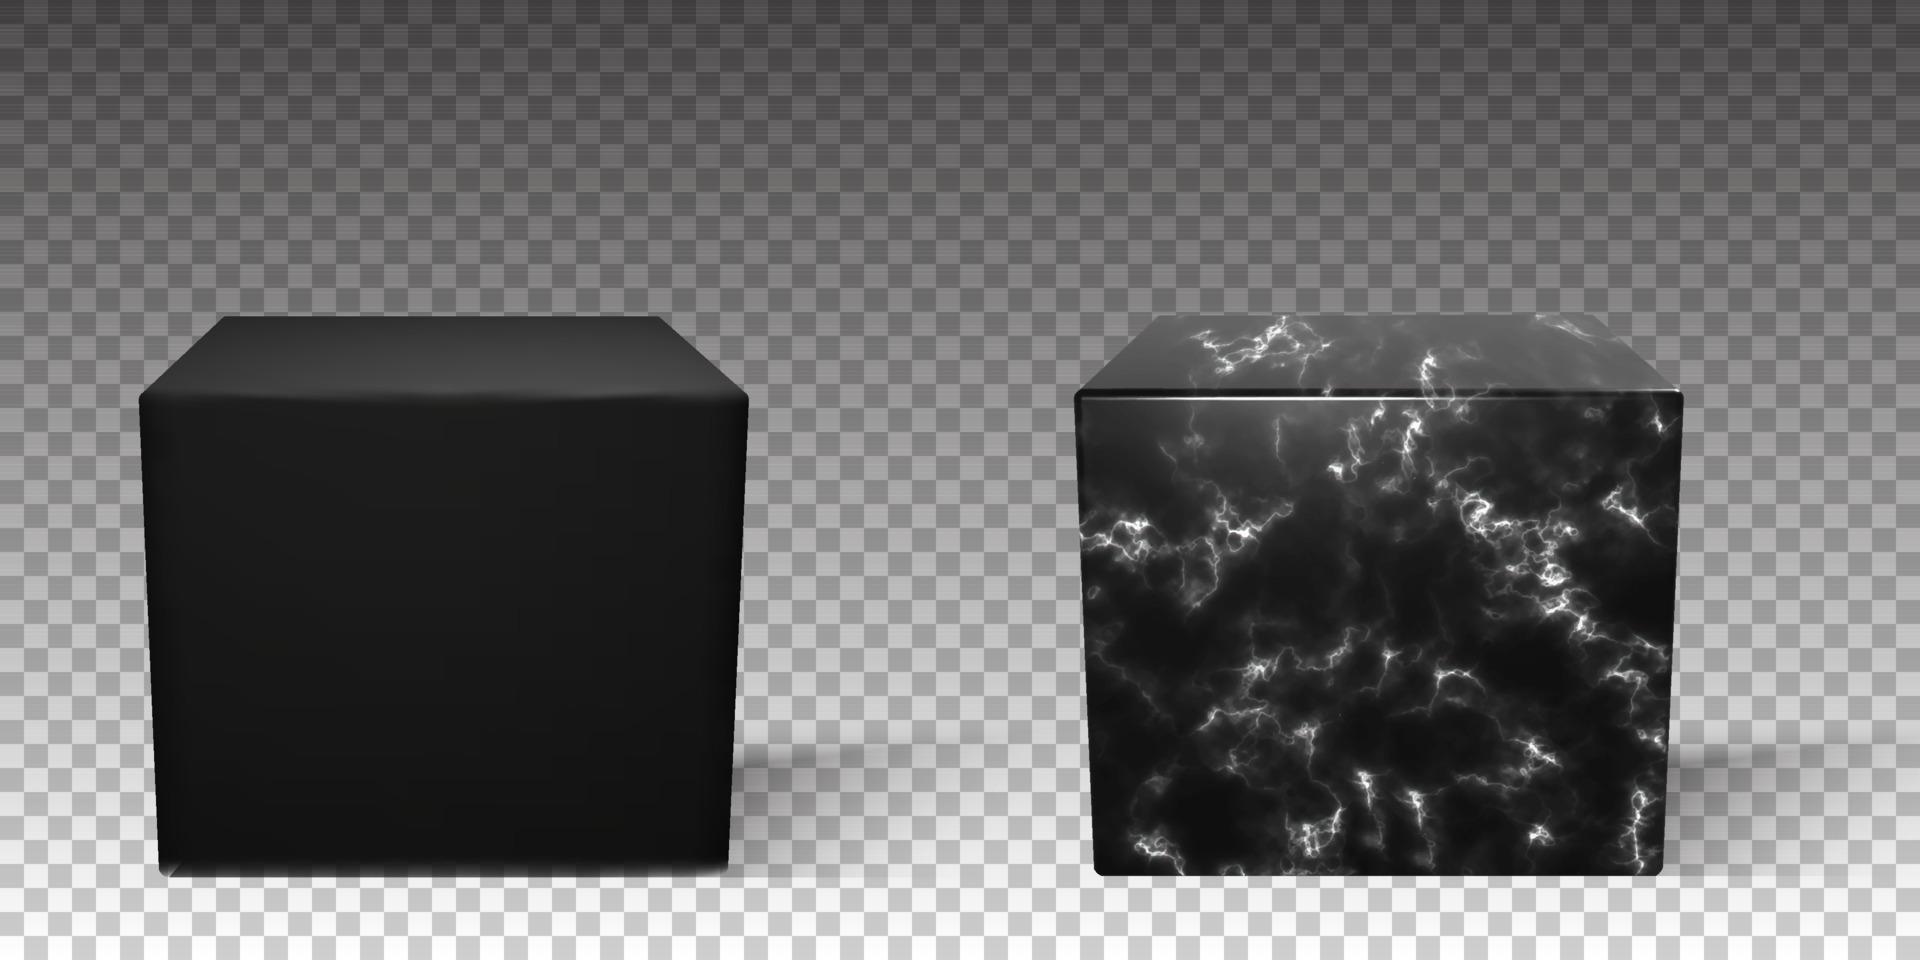 mármore preto 3d rende pódio de cubo em vetor. superfície de luxo realista em branco para modelo de maquete. pedestal de textura vetorial vetor